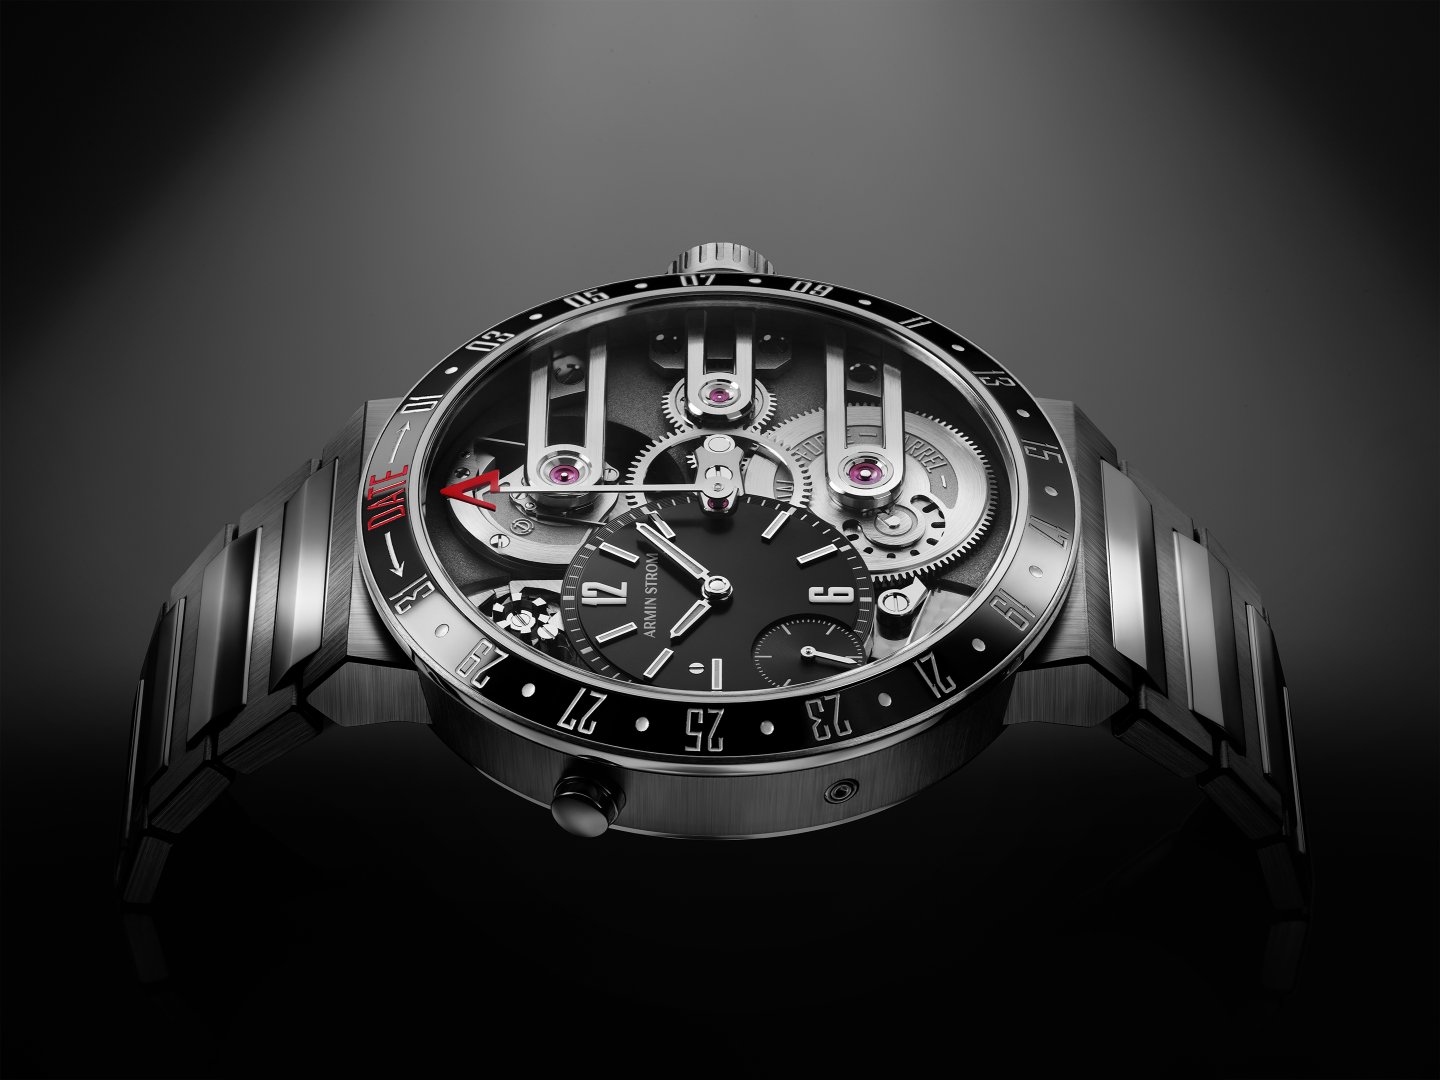 アーミン・シュトロームの 日付をベゼルに表示した世界初の時計「オービット」がマニュファクチュール・エディションで再び市場へ